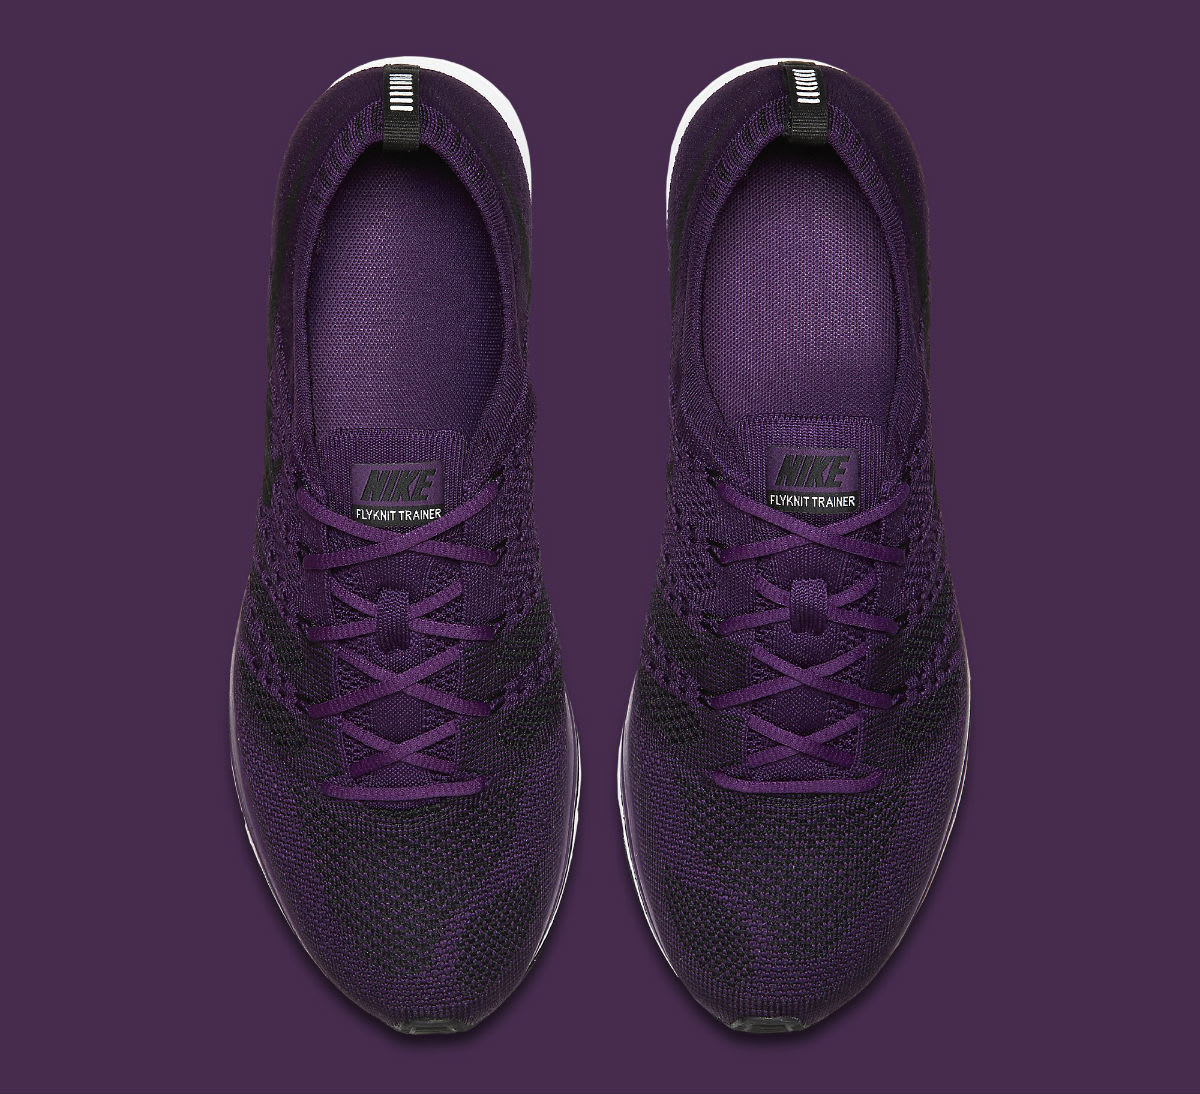 Nike Flyknit Trainer Night Purple Release Date AH8396-500 Top